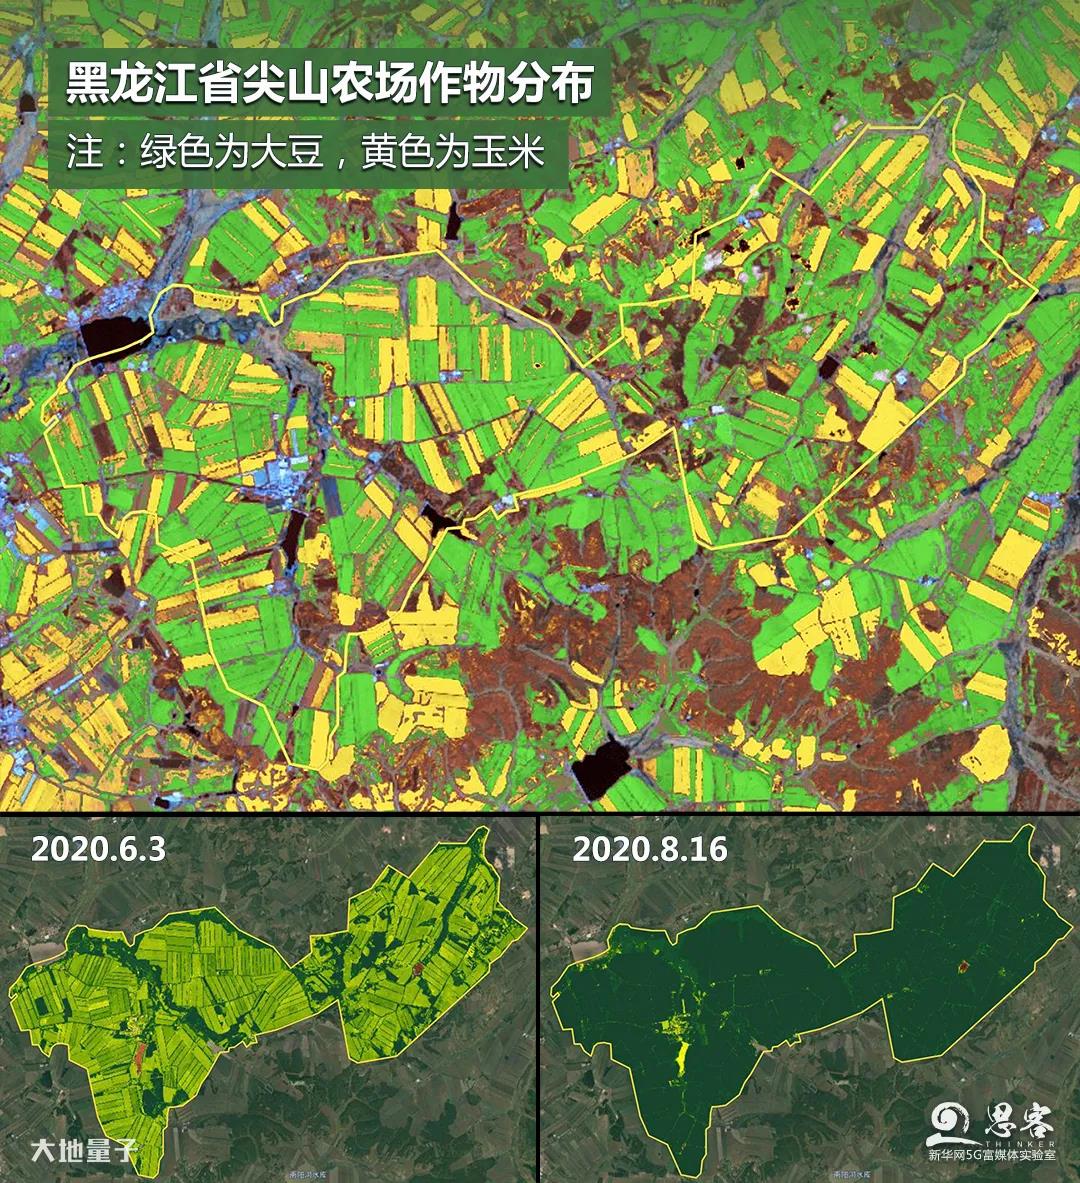 PLANET卫星影像遥感监测云南贡山泥石流滑坡地质灾害-北京盛世华遥科技有限公司